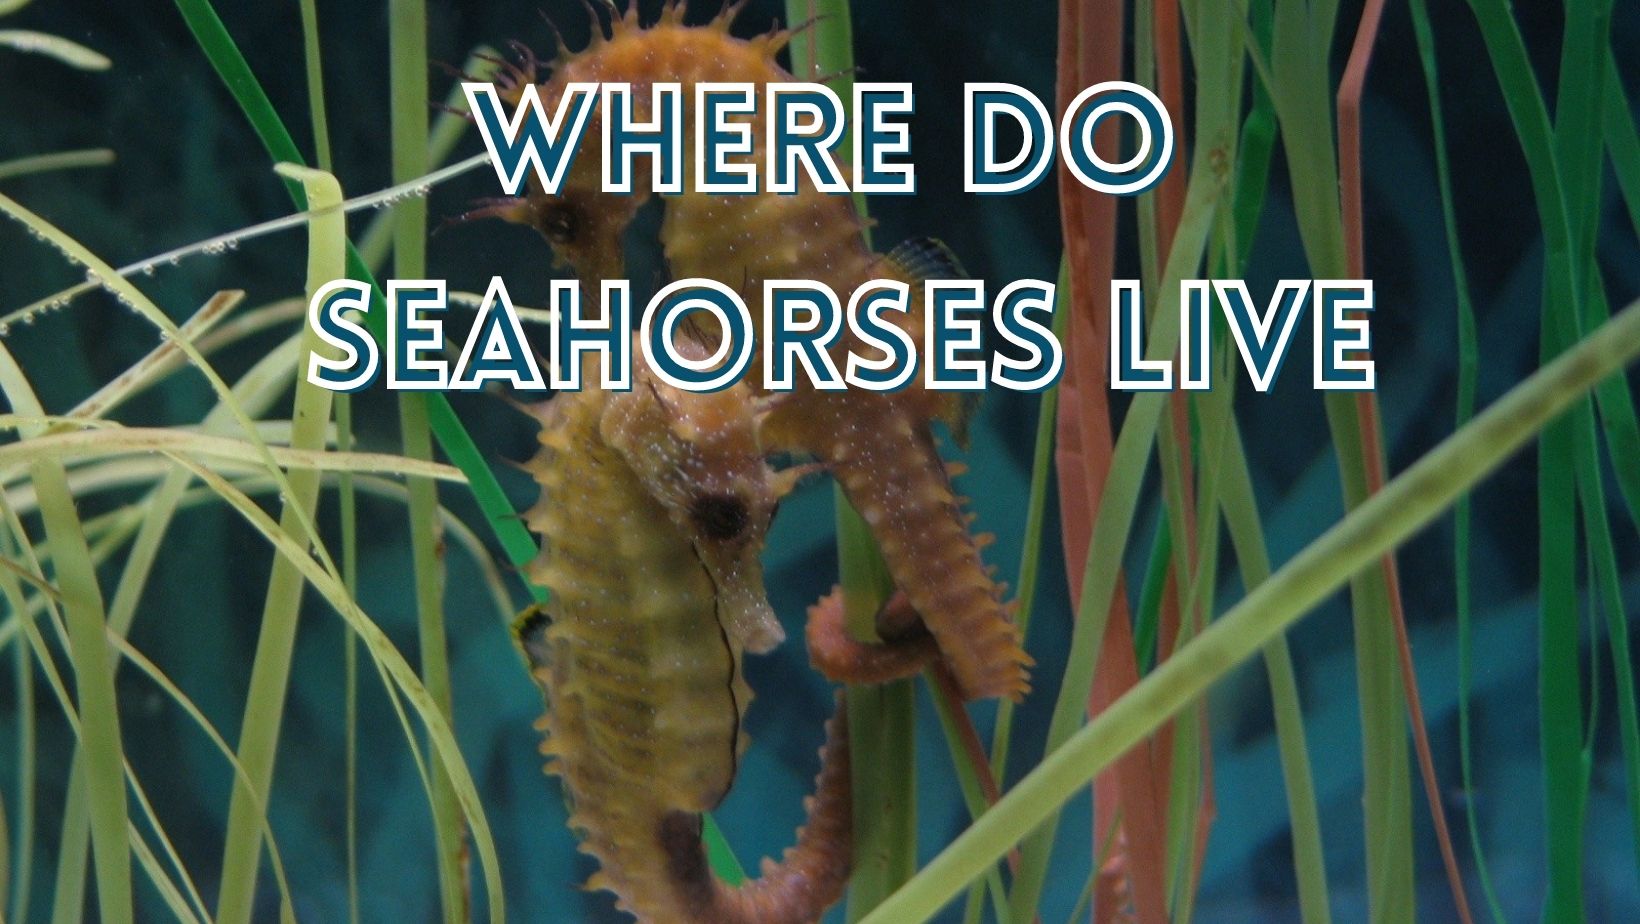 Where do seahorses live